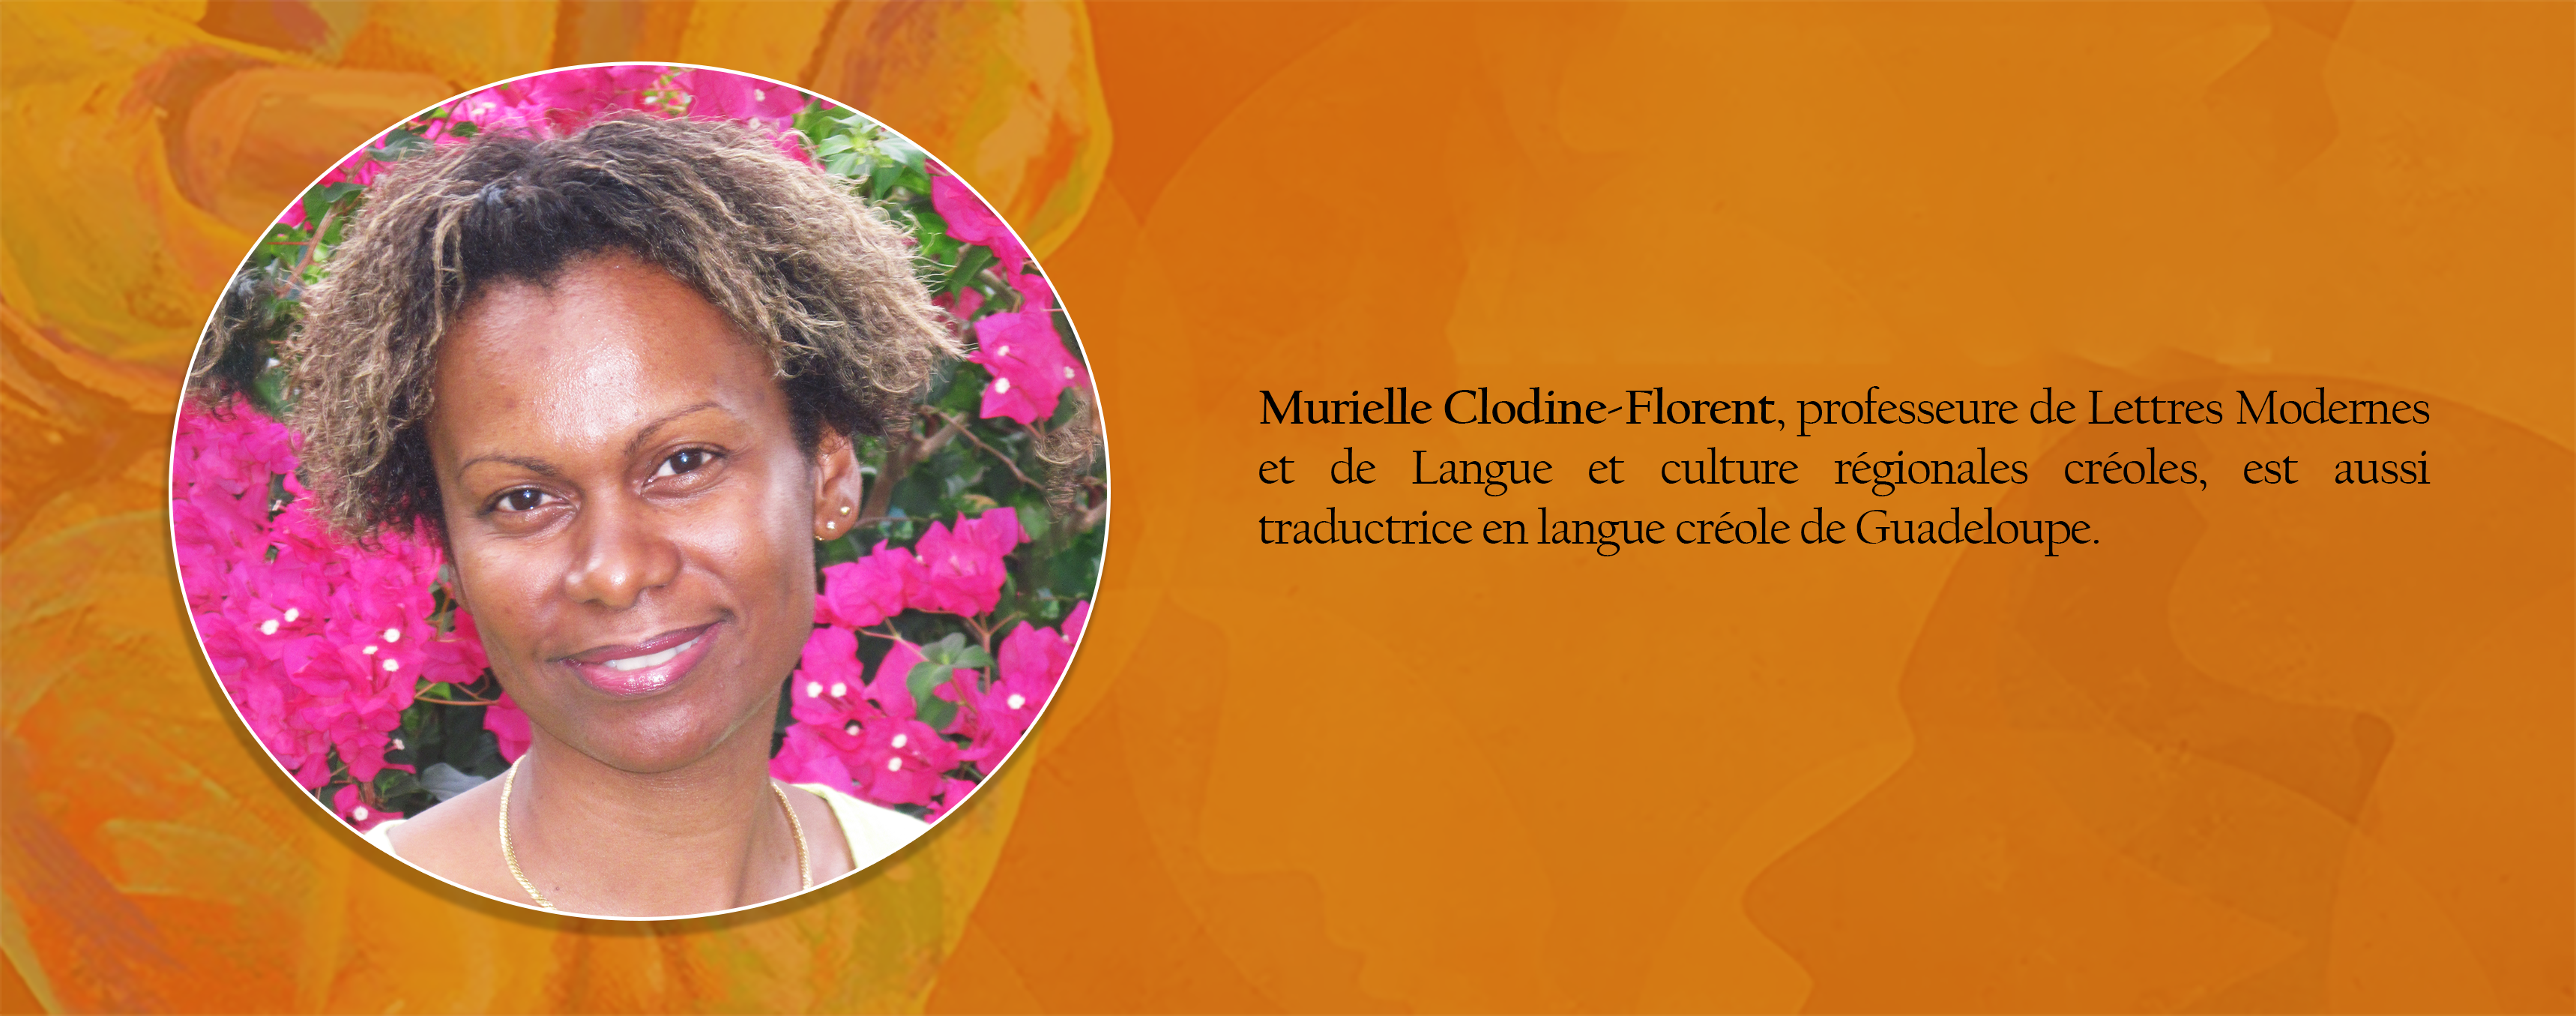 CLODINE-FLORENT Murielle